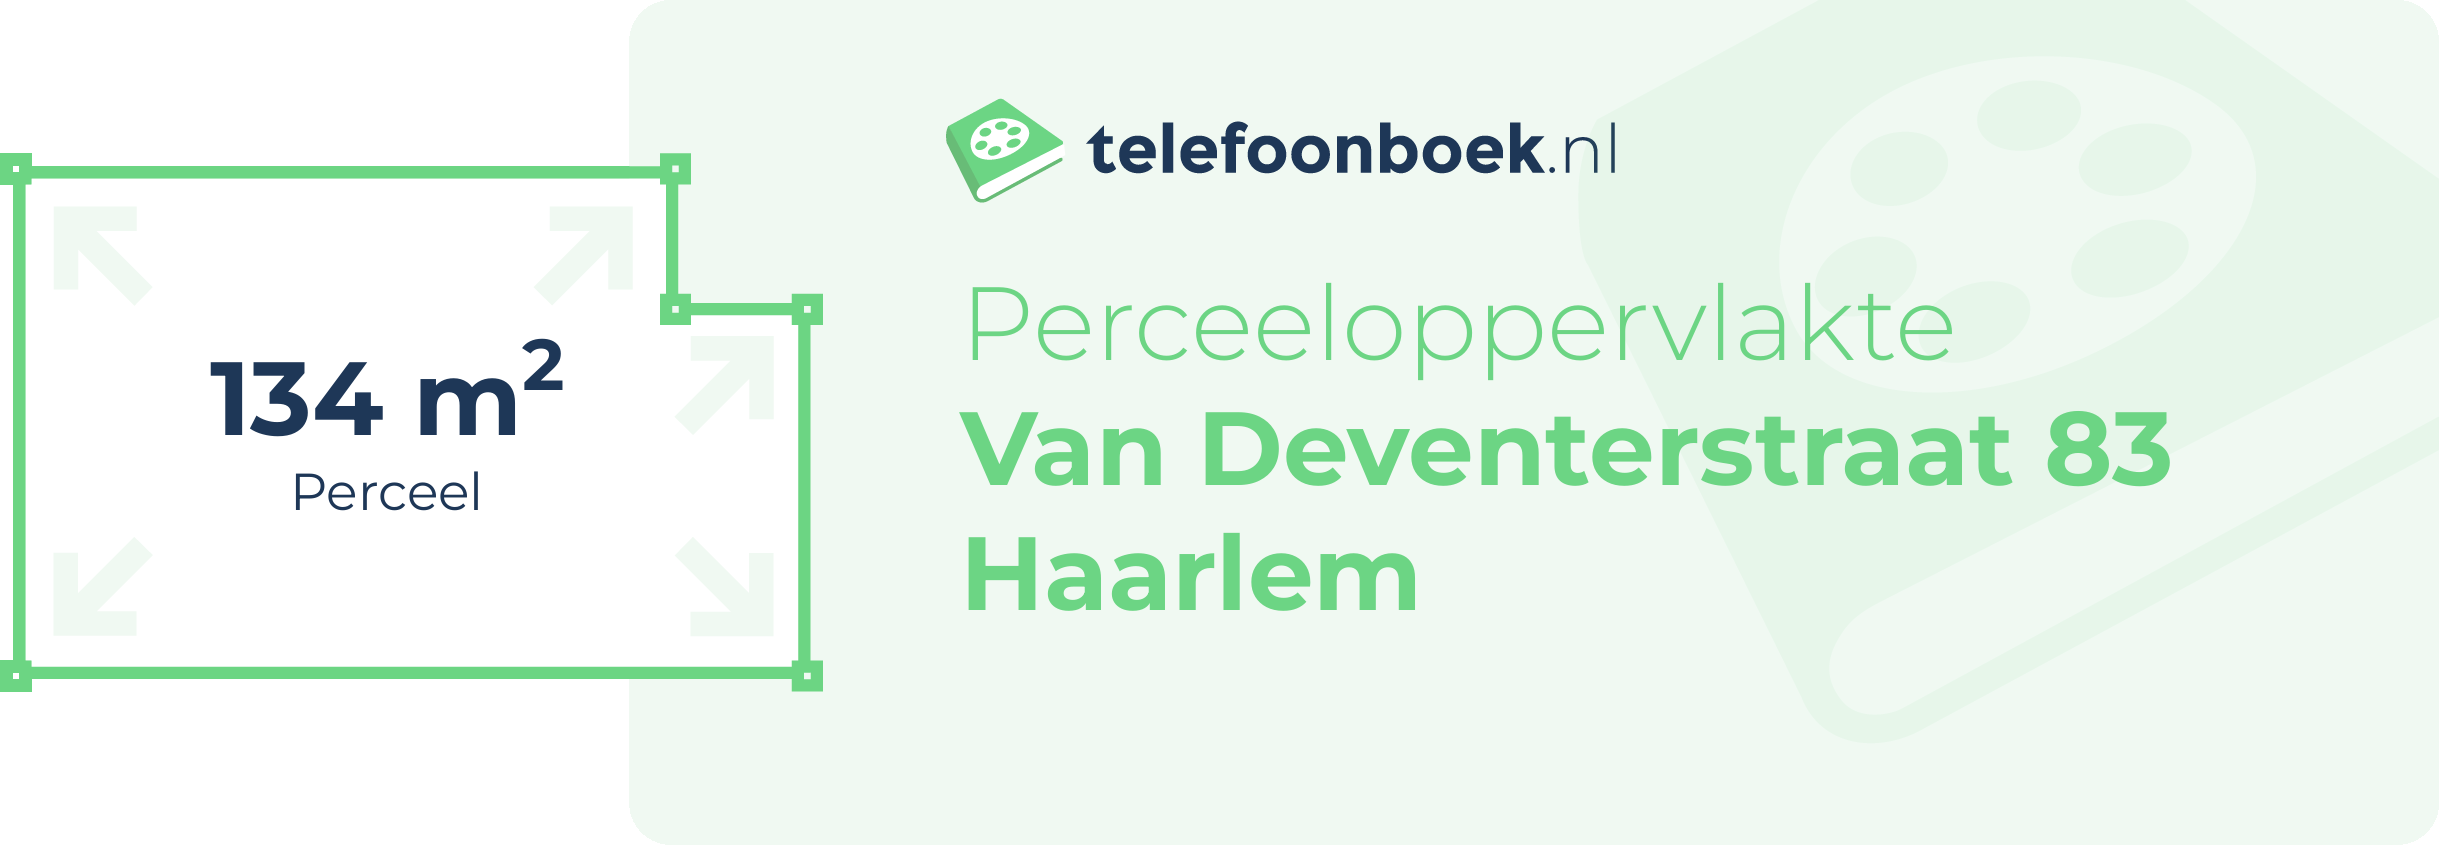 Perceeloppervlakte Van Deventerstraat 83 Haarlem